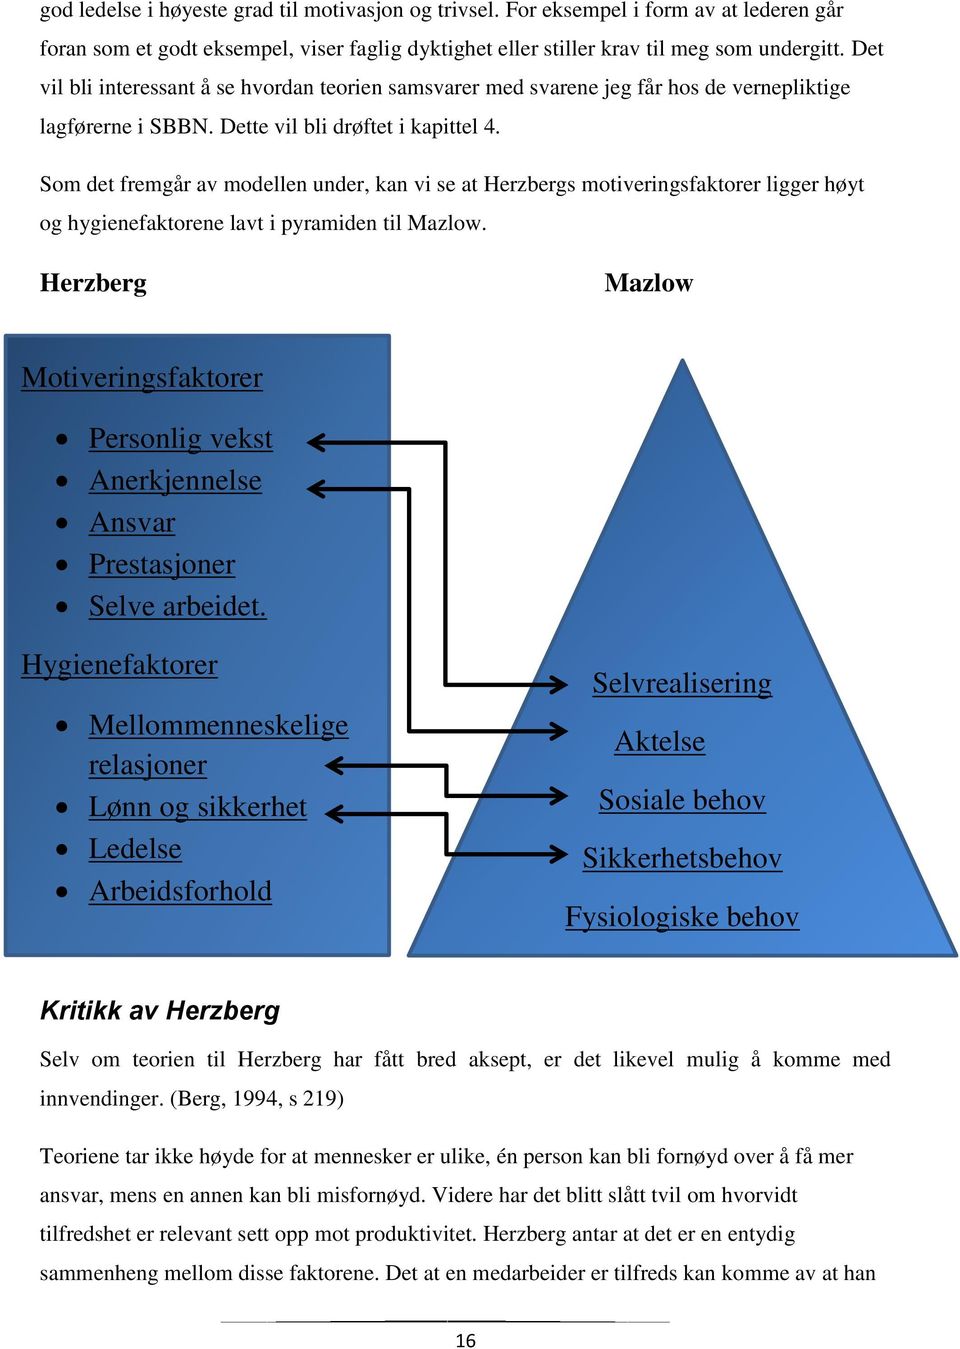 Som det fremgår av modellen under, kan vi se at Herzbergs motiveringsfaktorer ligger høyt og hygienefaktorene lavt i pyramiden til Mazlow.